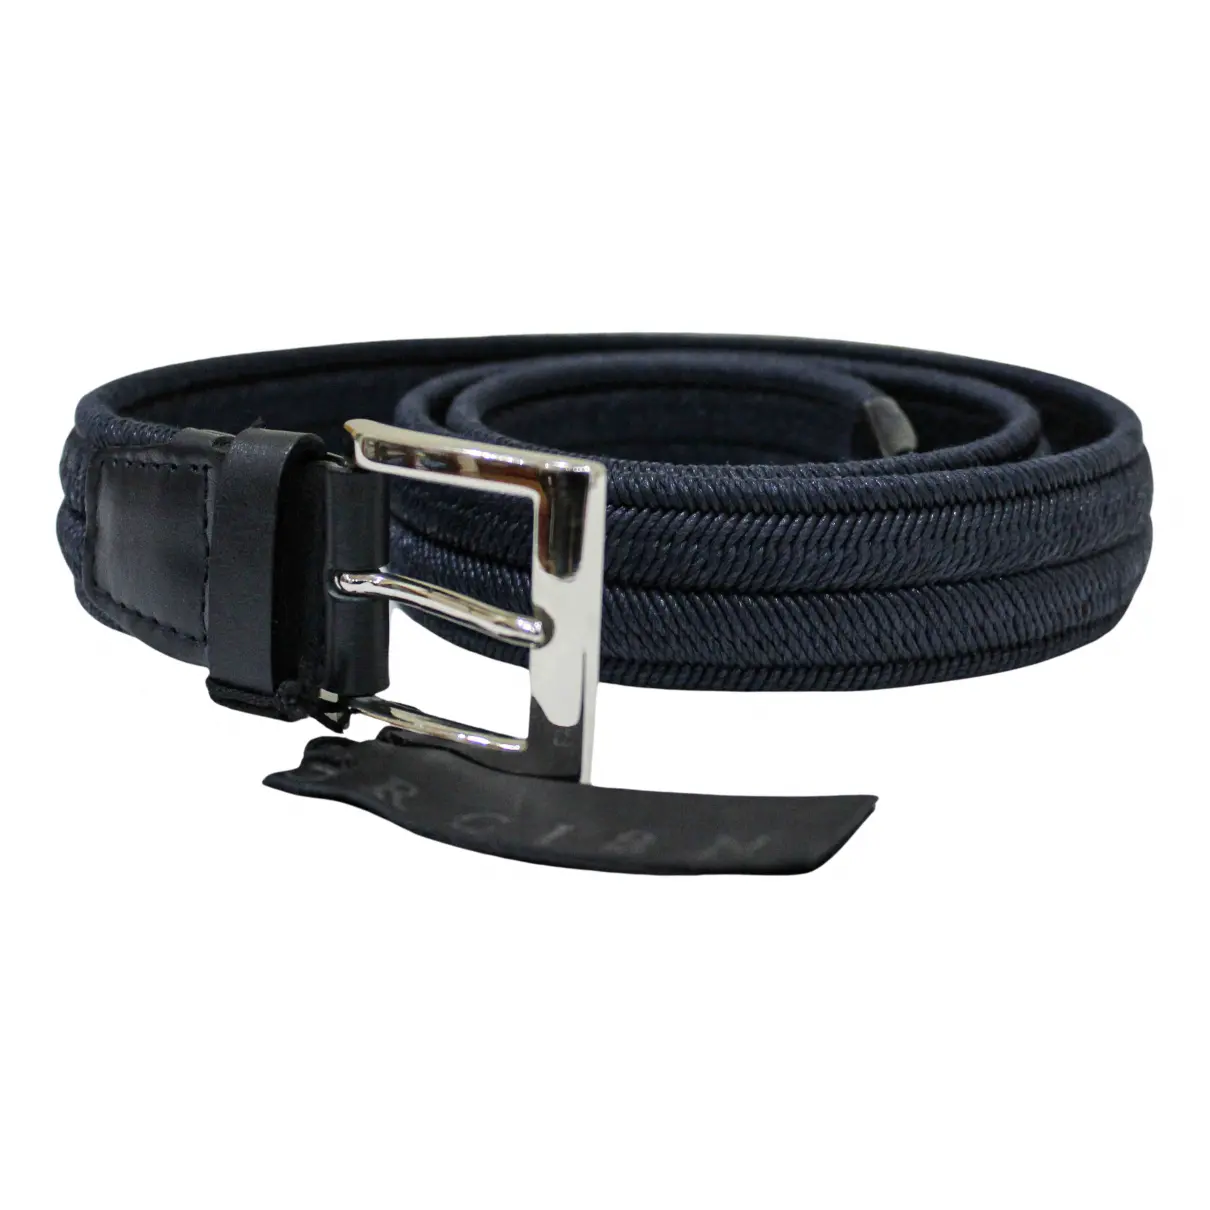 Cloth belt Orciani